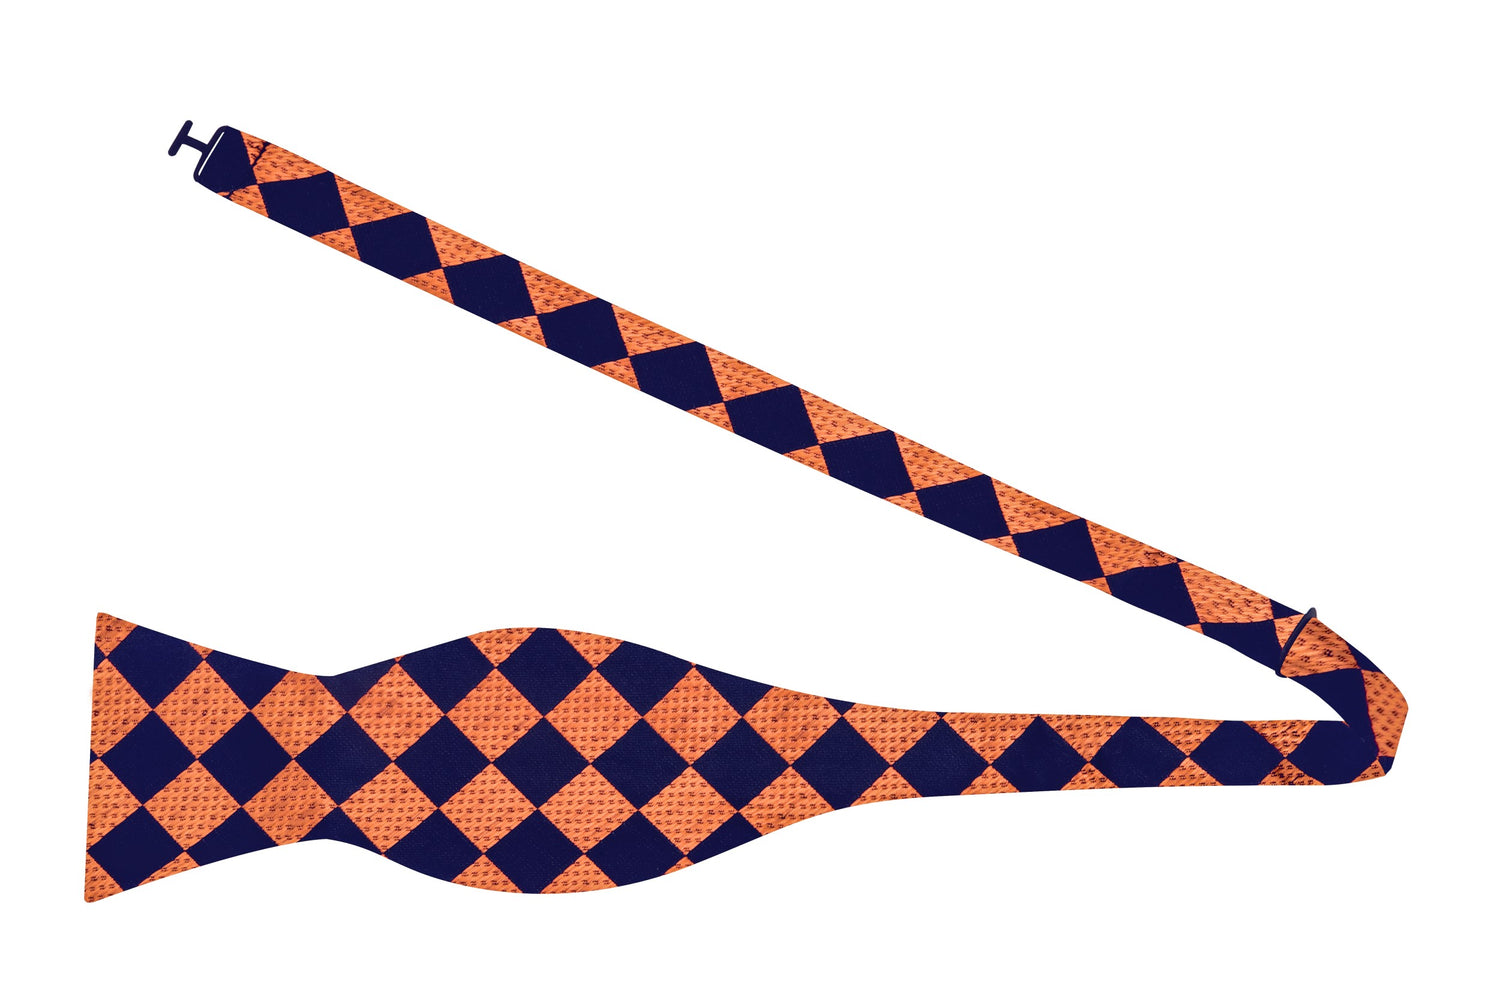 Untied Bow tie: Black Orange Check Bow Tie